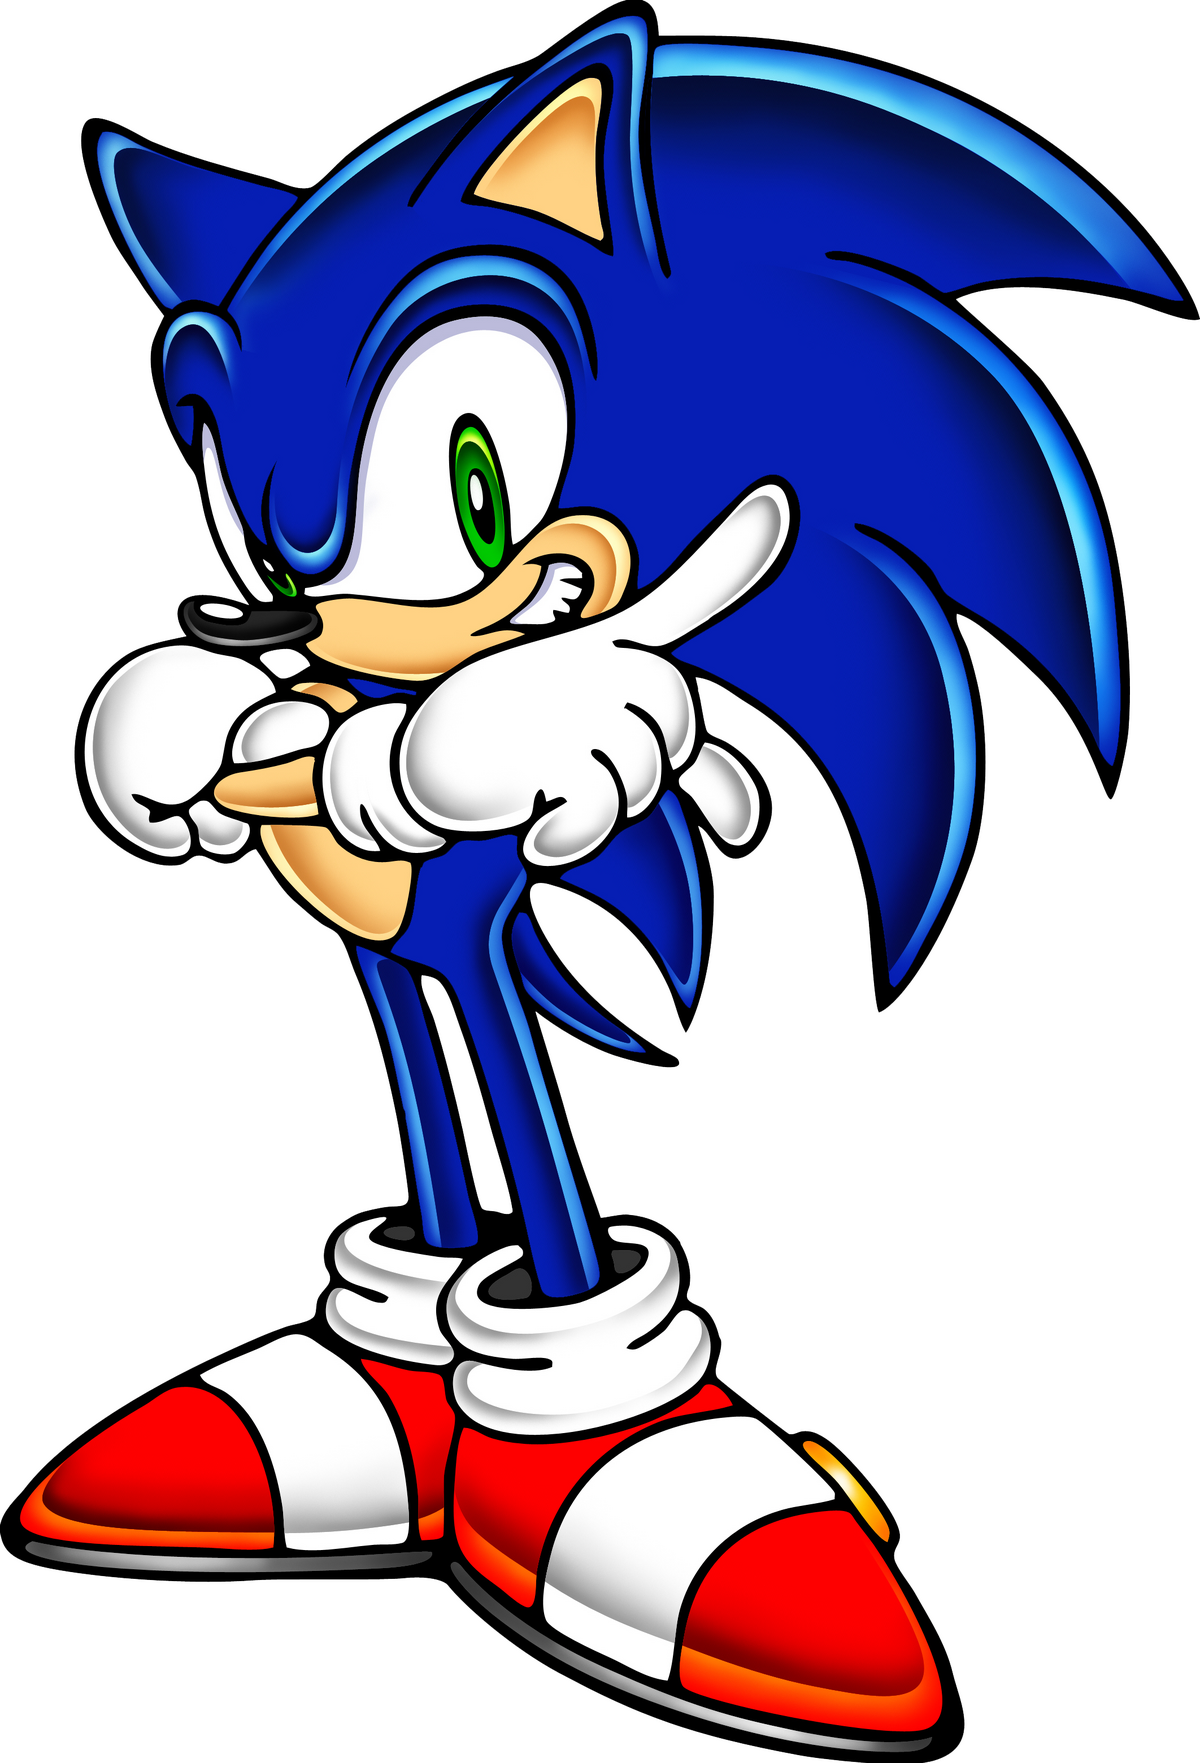 Sonic Prime, Sonic Art Assets DVD Wiki